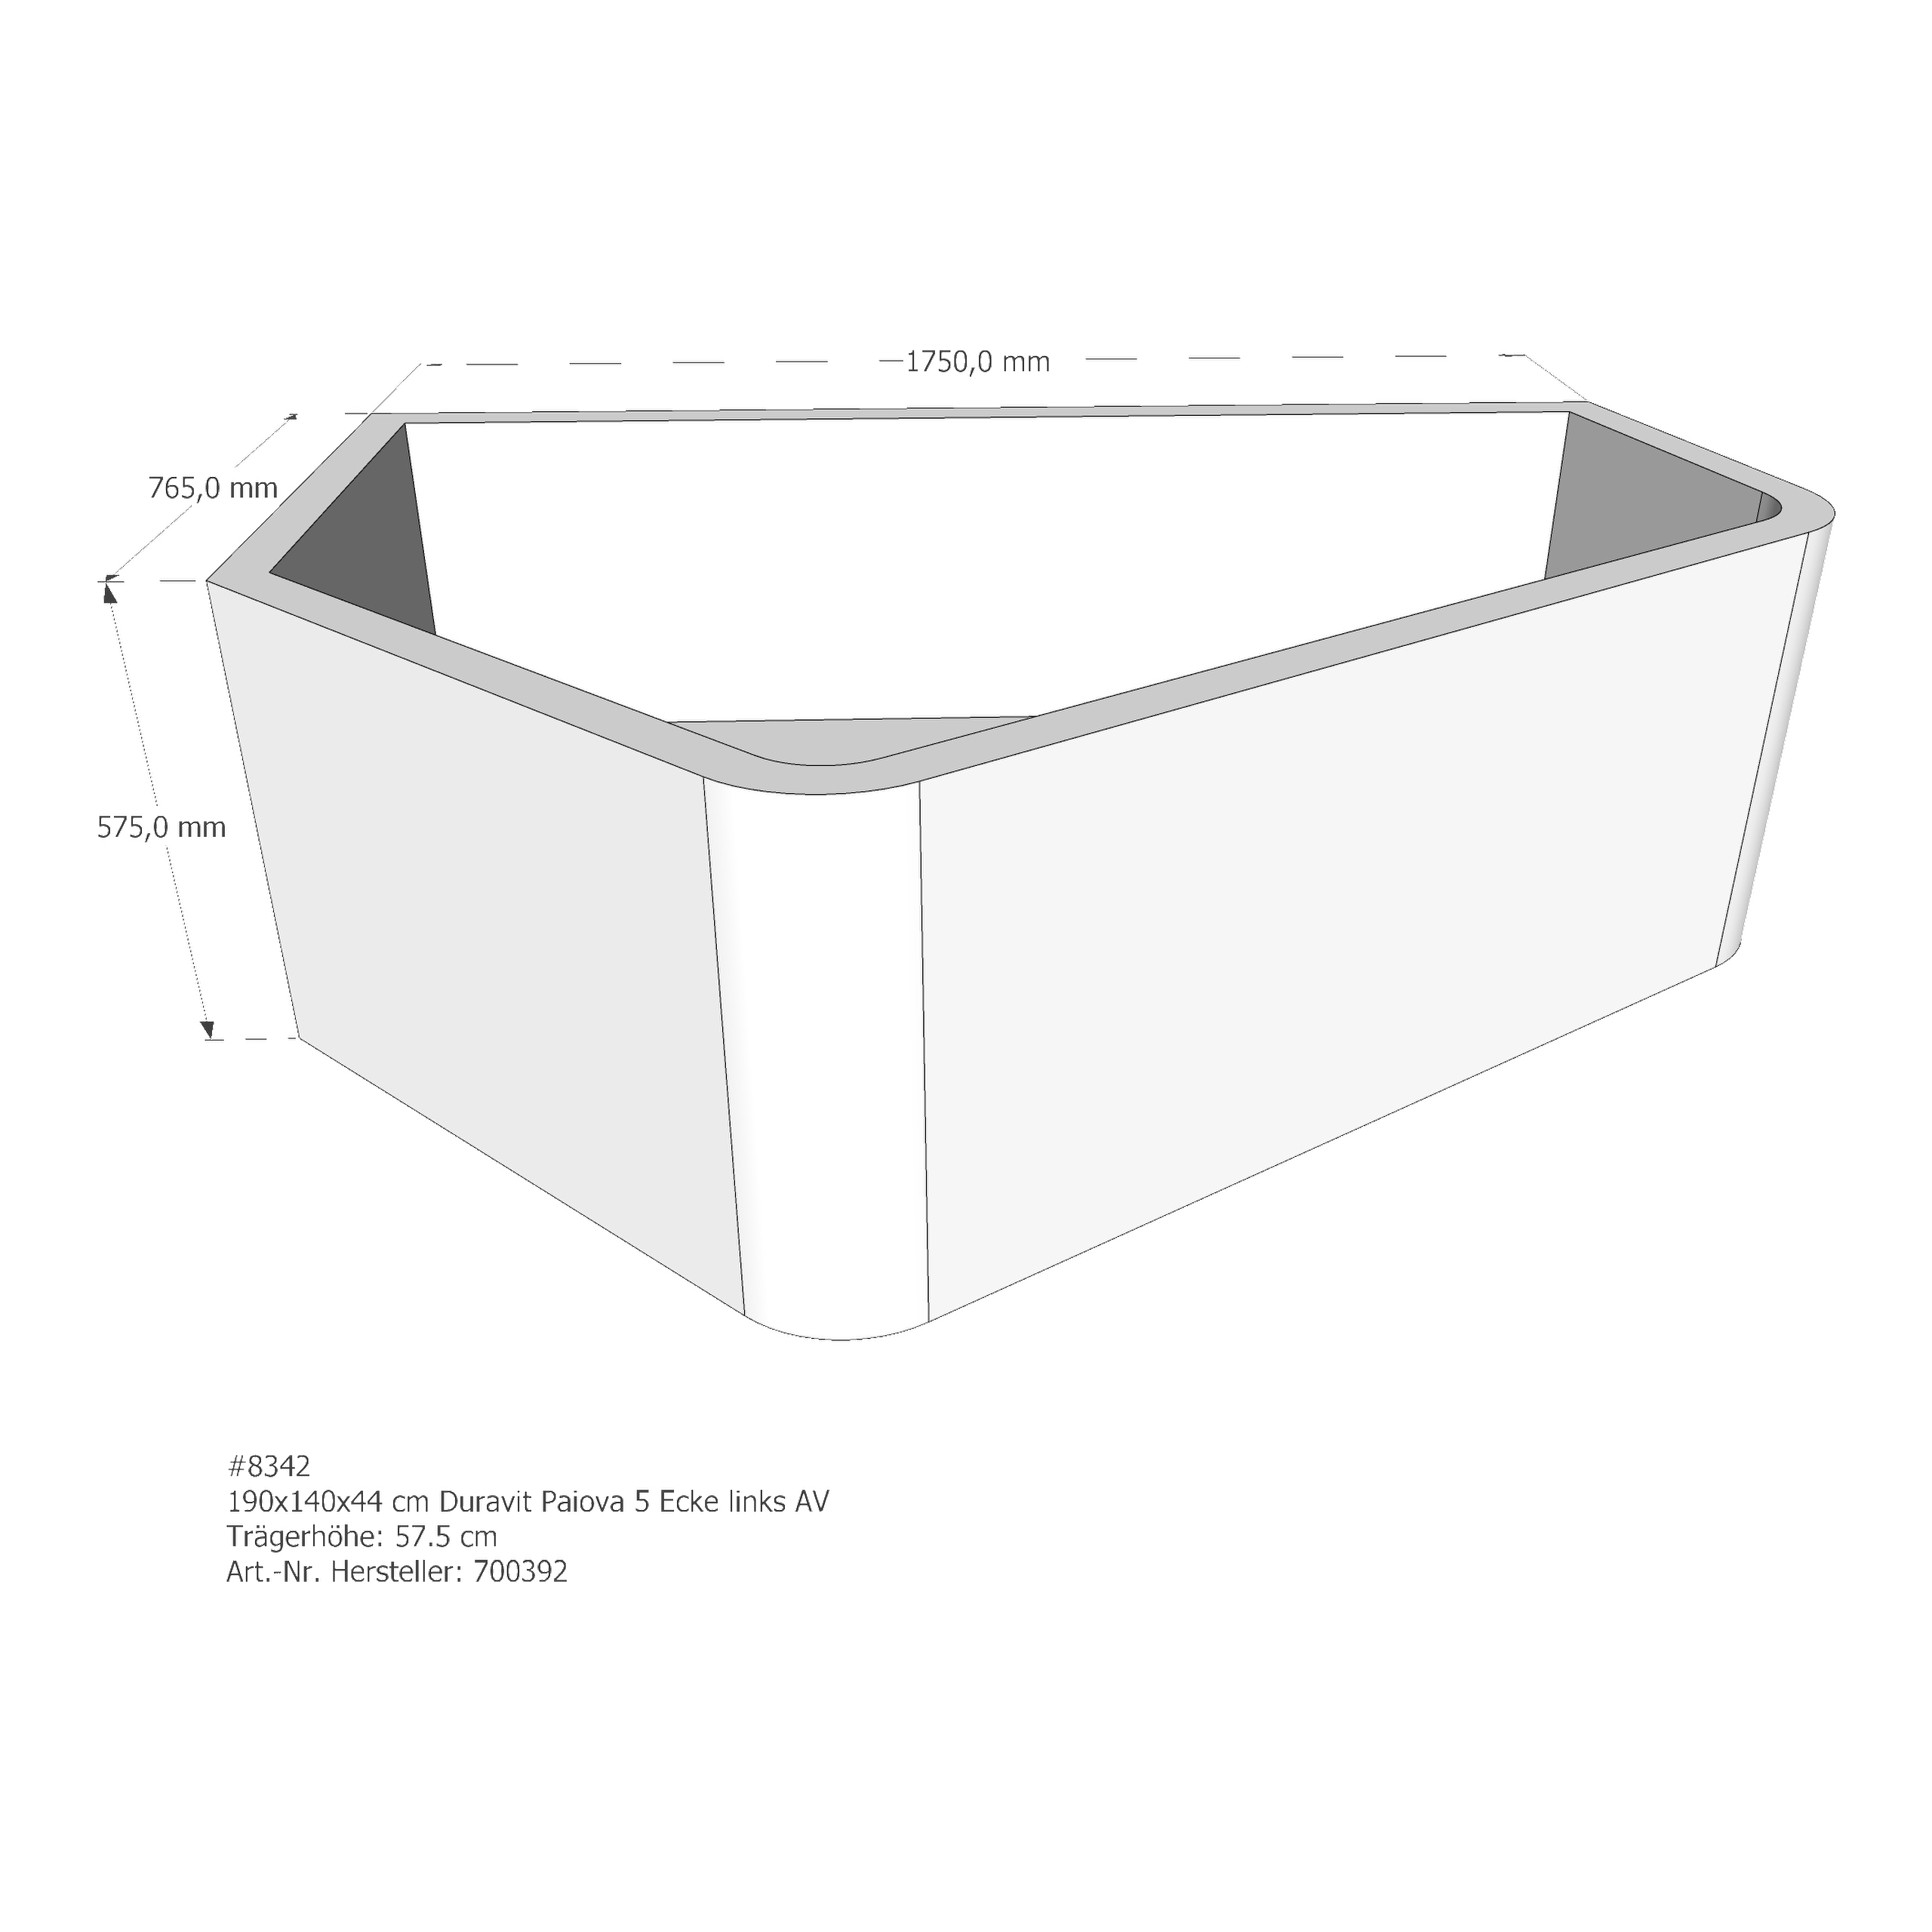 Badewannenträger für Duravit Paiova 5 Ecke links 190 × 140 × 44 cm